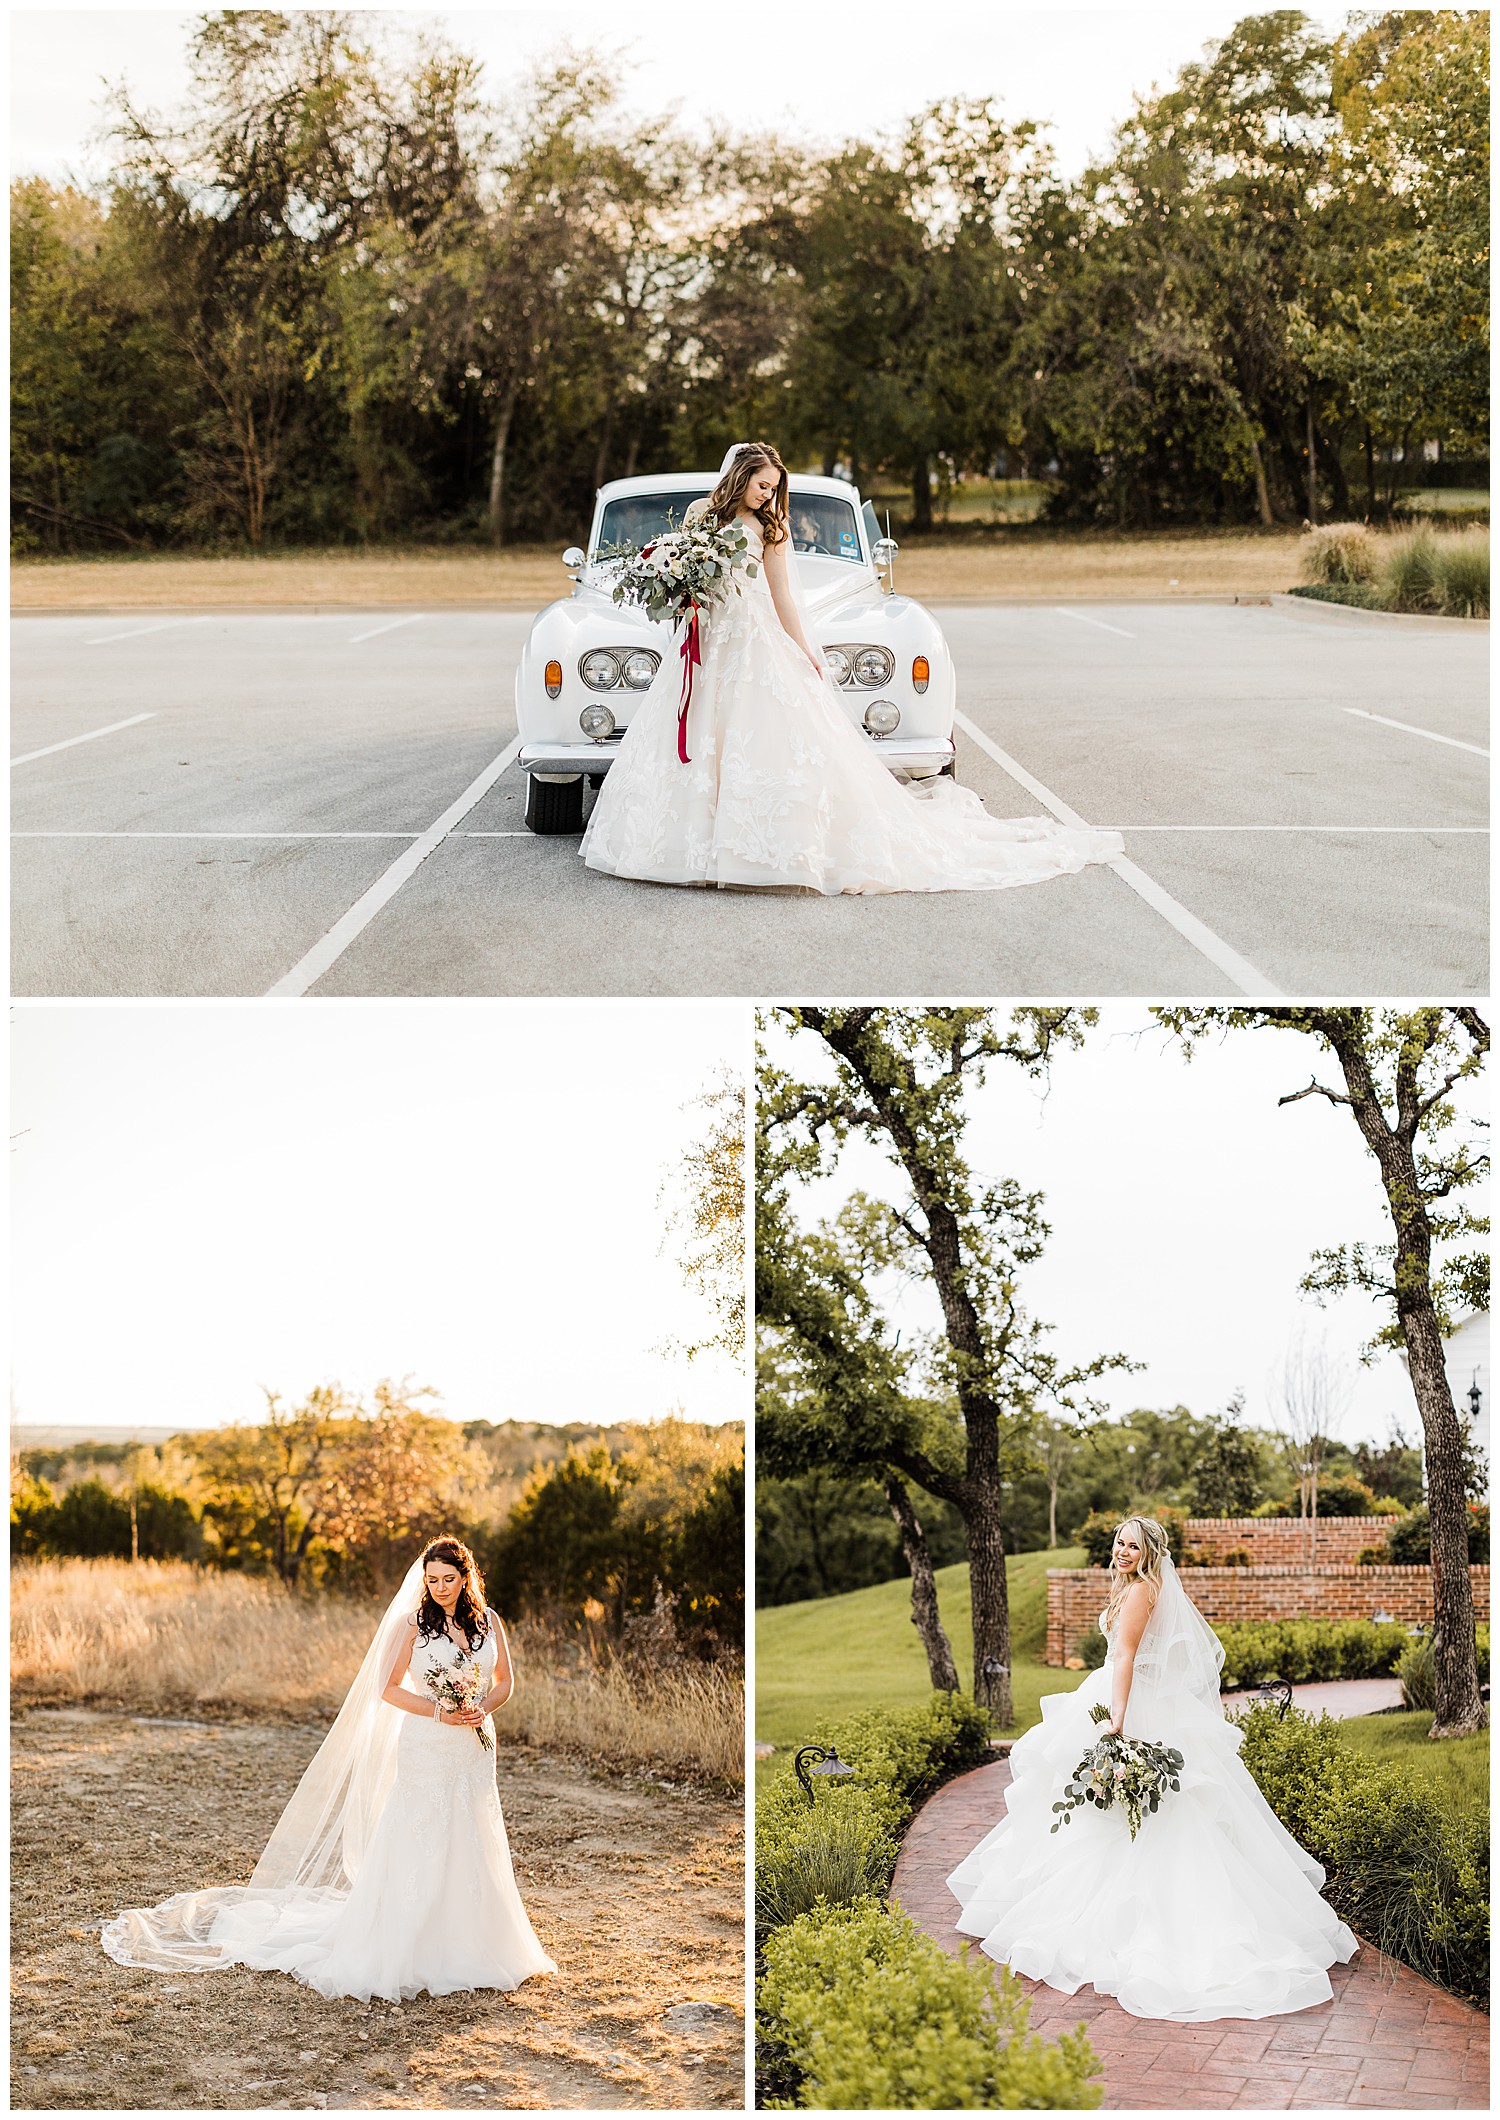 Outdoor bridal photos in Dallas, TX